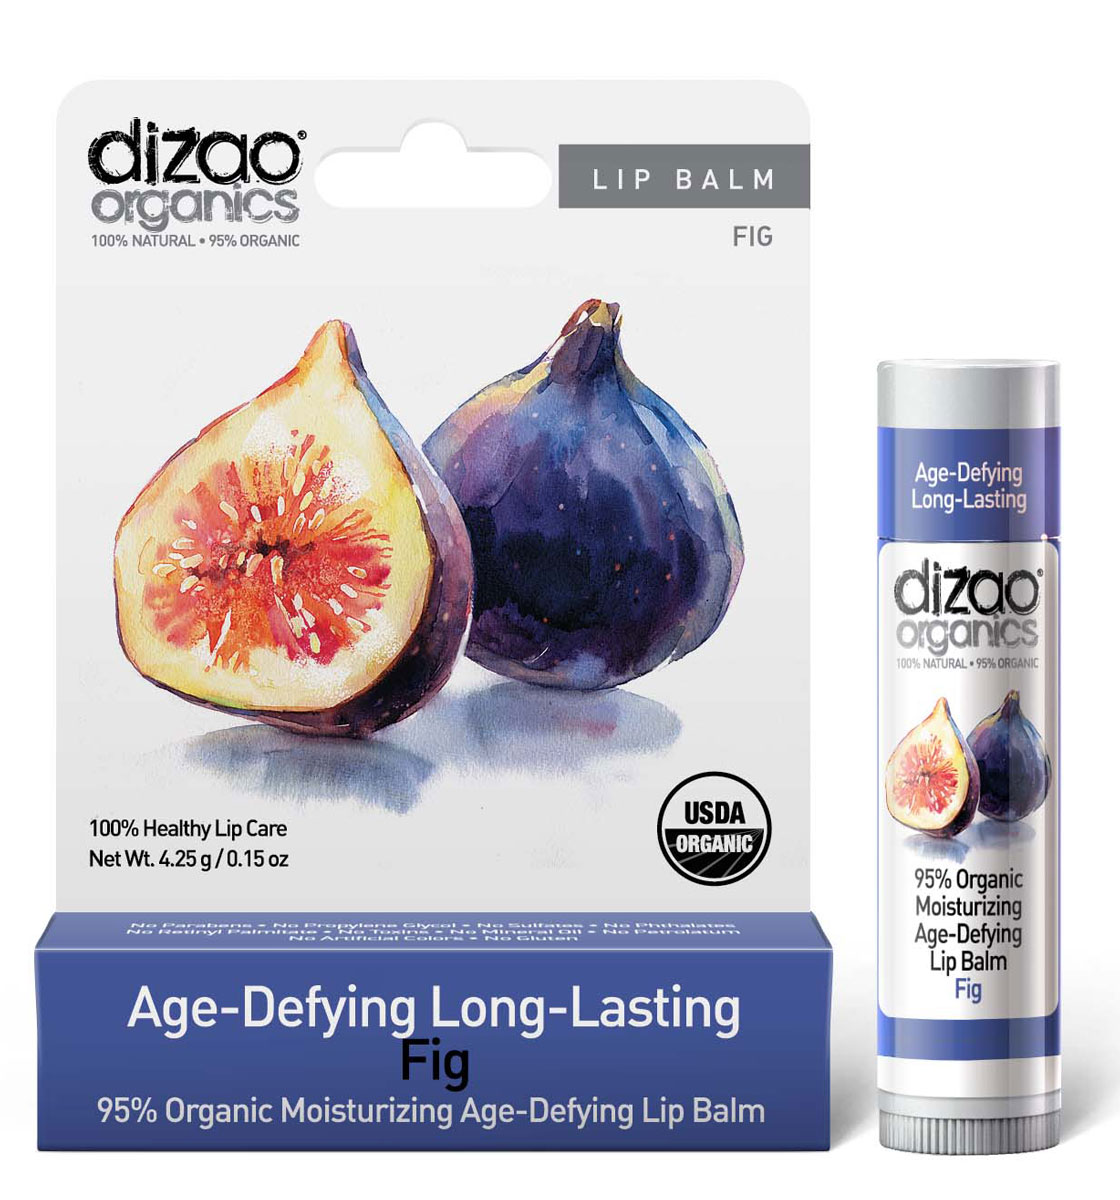 Dizao Organics Органический увлажняющий антивозрастной бальзам для губ Инжир. 100% Natural, 95% Organic - купить по лучшей цене от интернет магазина OZON.ru 